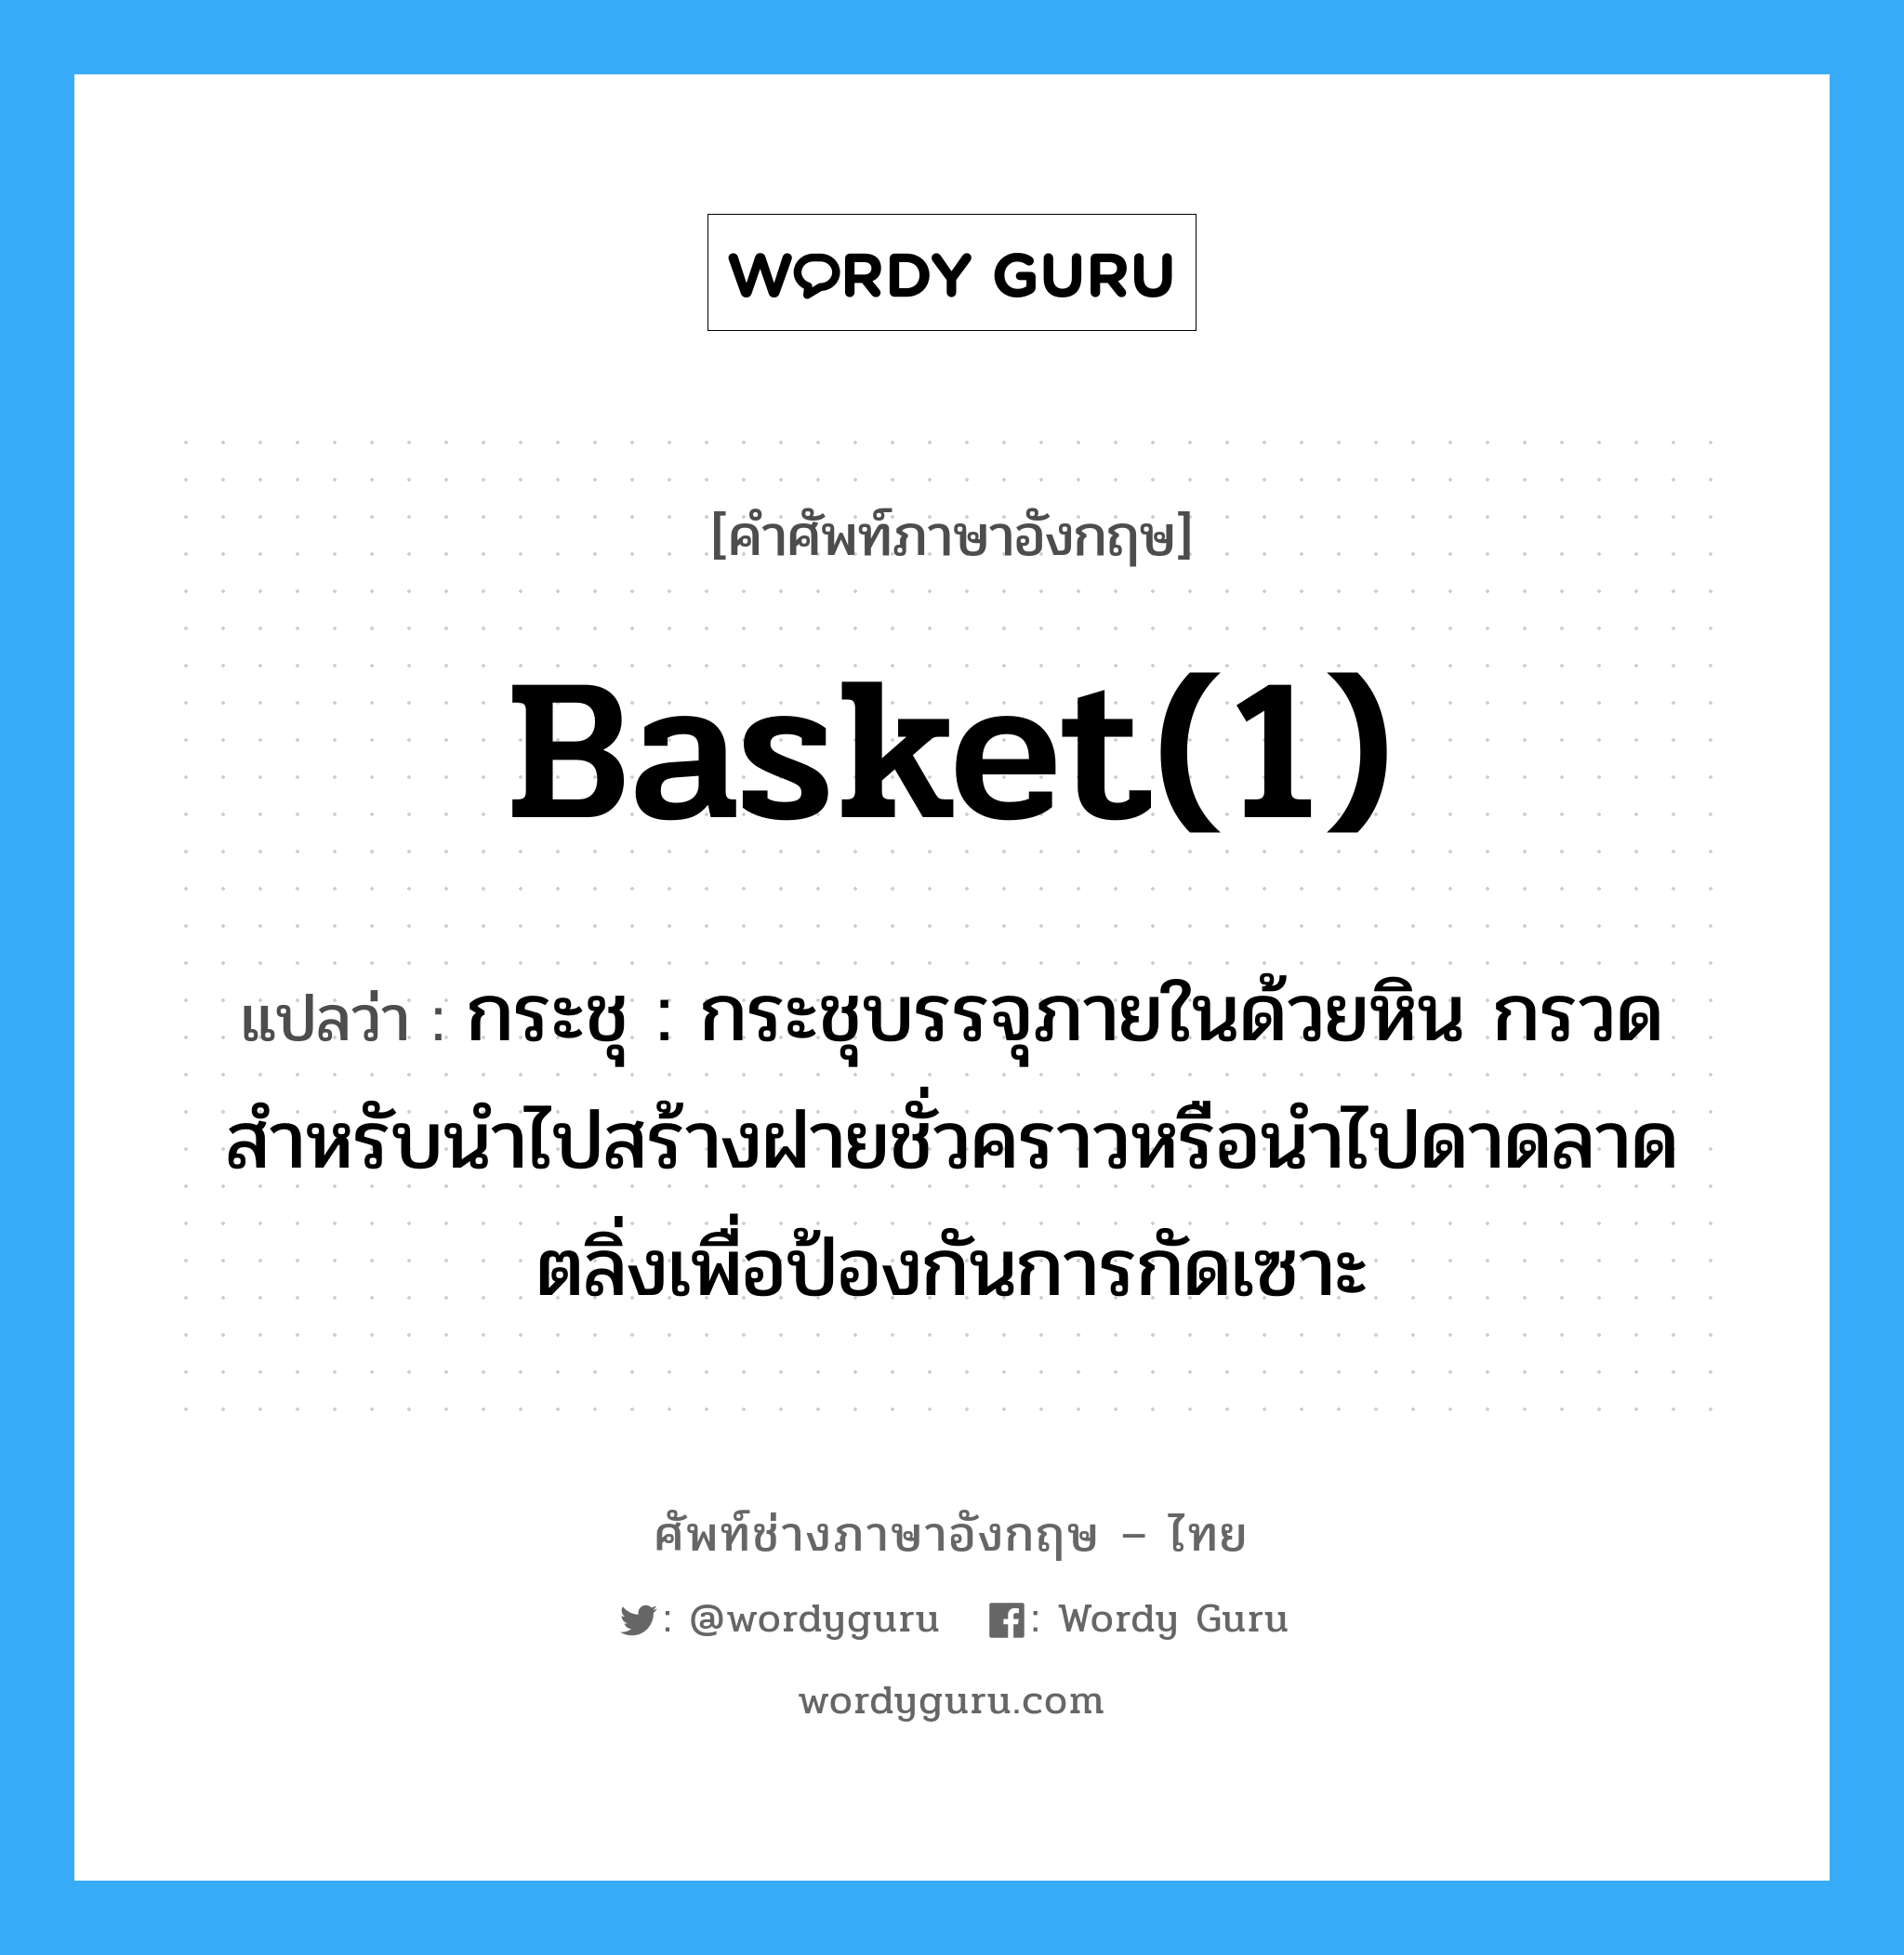 basket(1) แปลว่า?, คำศัพท์ช่างภาษาอังกฤษ - ไทย basket(1) คำศัพท์ภาษาอังกฤษ basket(1) แปลว่า กระชุ : กระชุบรรจุภายในด้วยหิน กรวด สำหรับนำไปสร้างฝายชั่วคราวหรือนำไปดาดลาดตลิ่งเพื่อป้องกันการกัดเซาะ